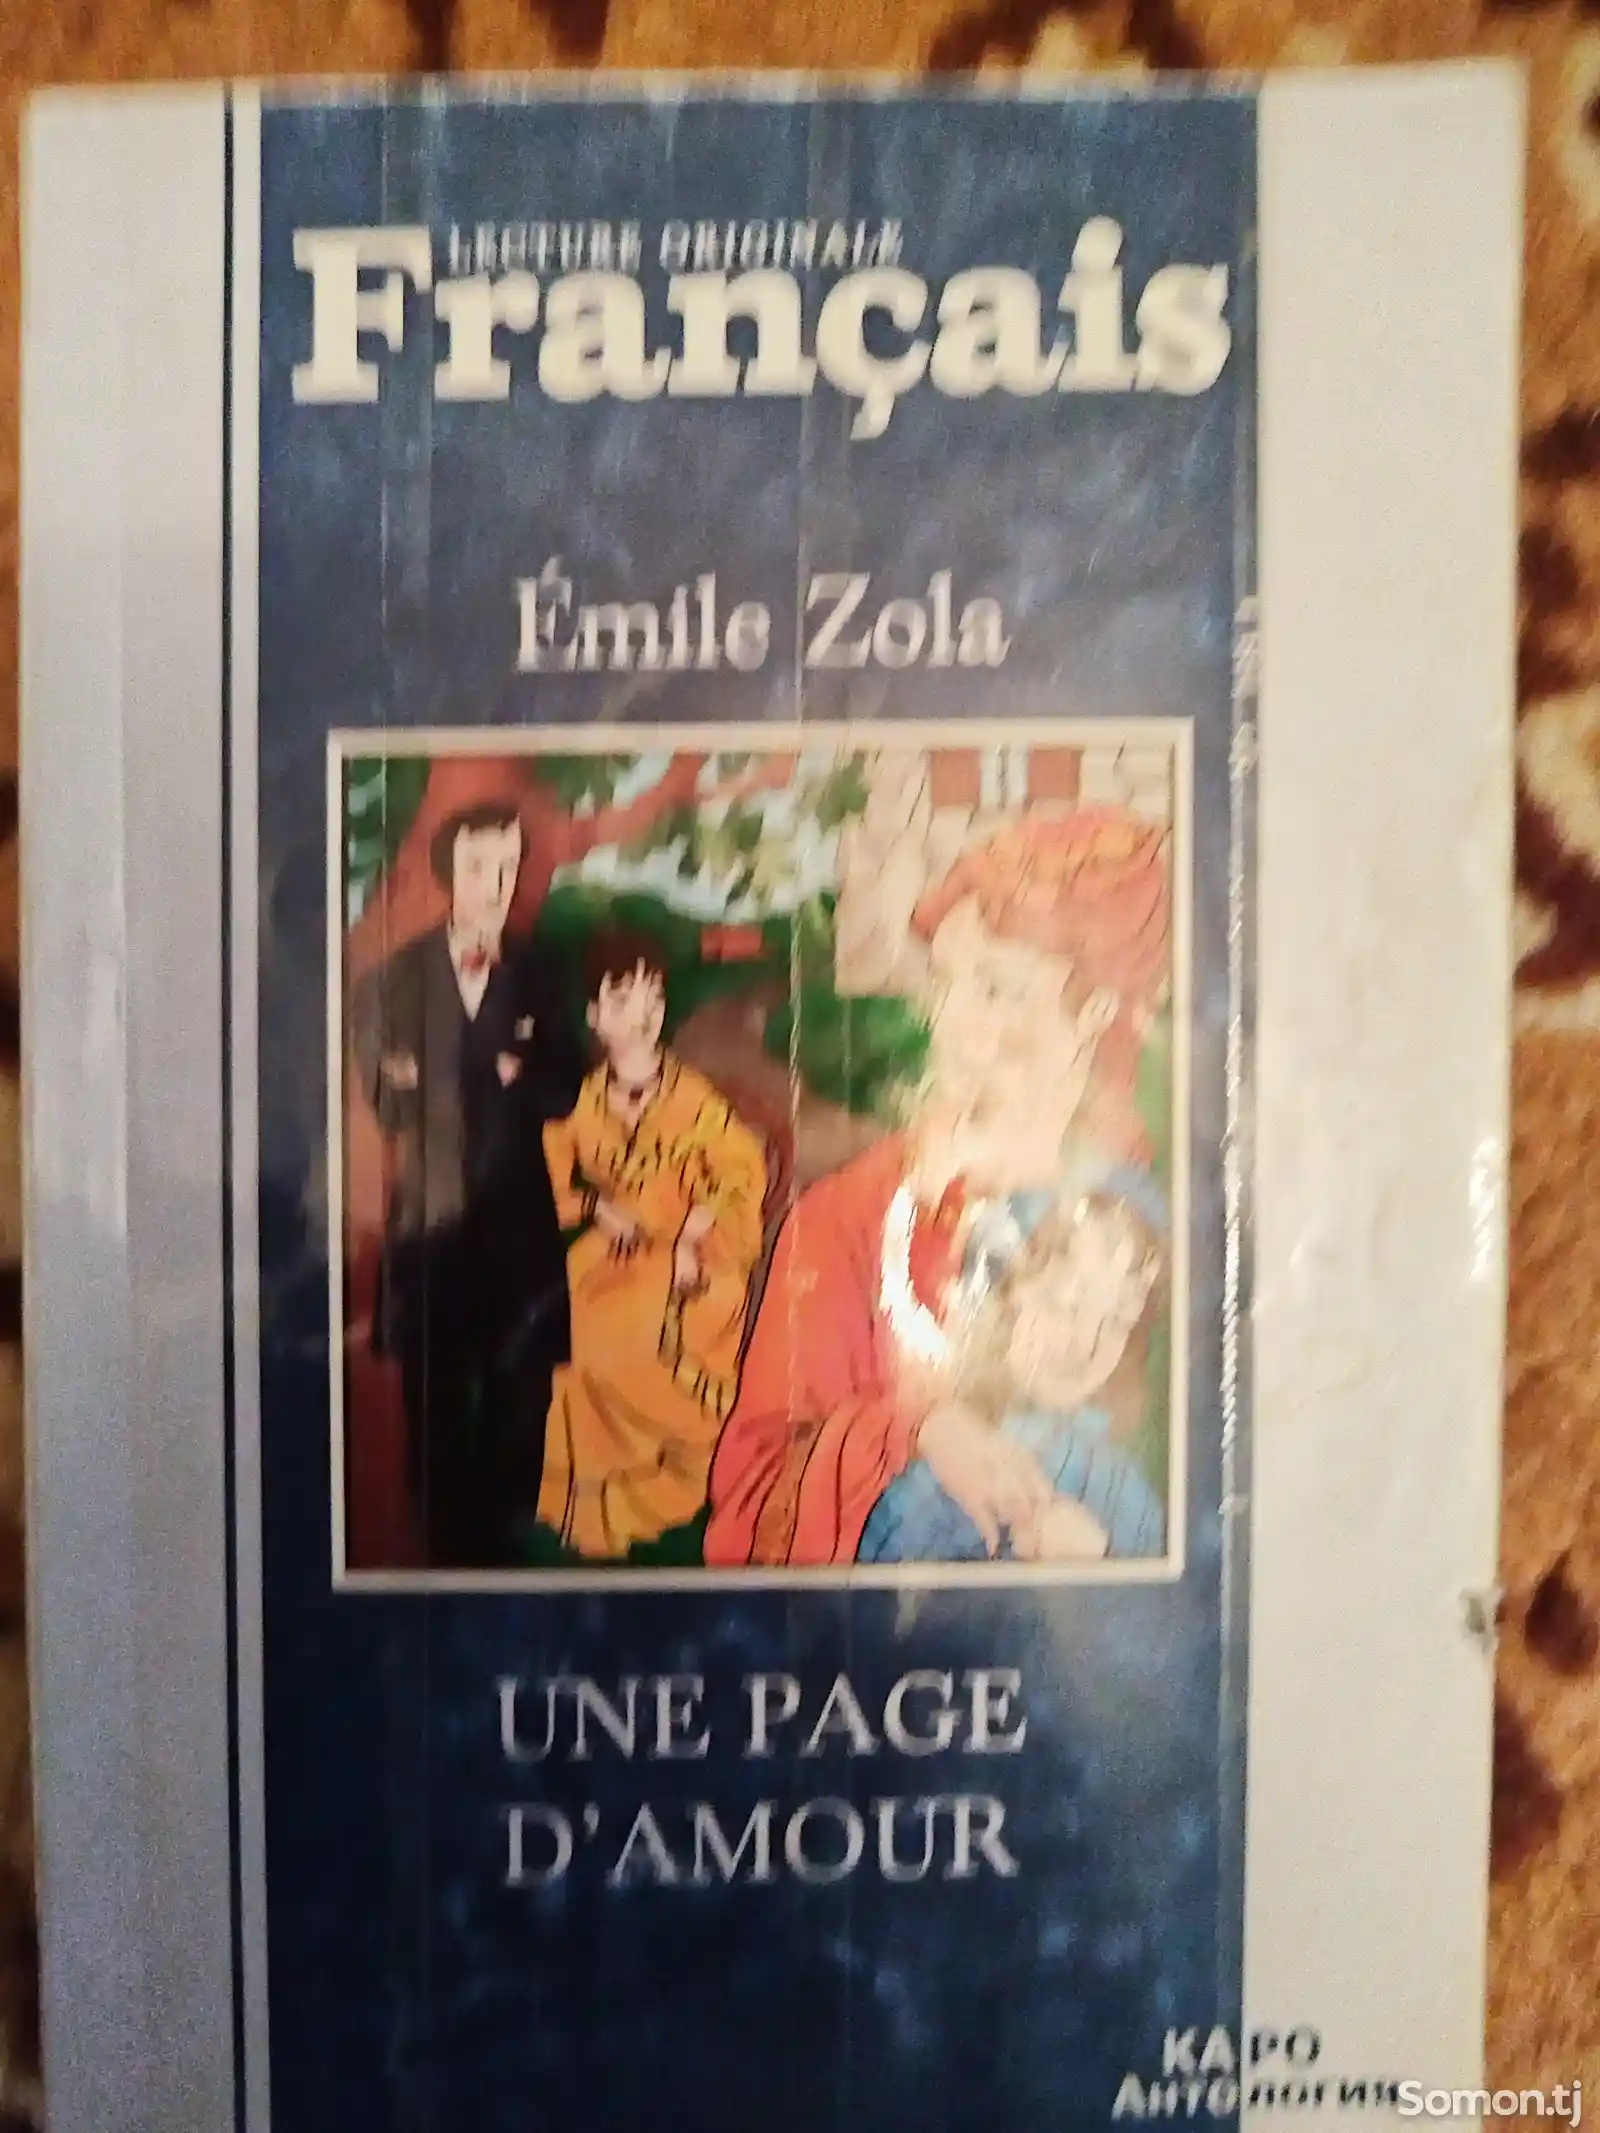 История любви, Э. Золя на французском языке